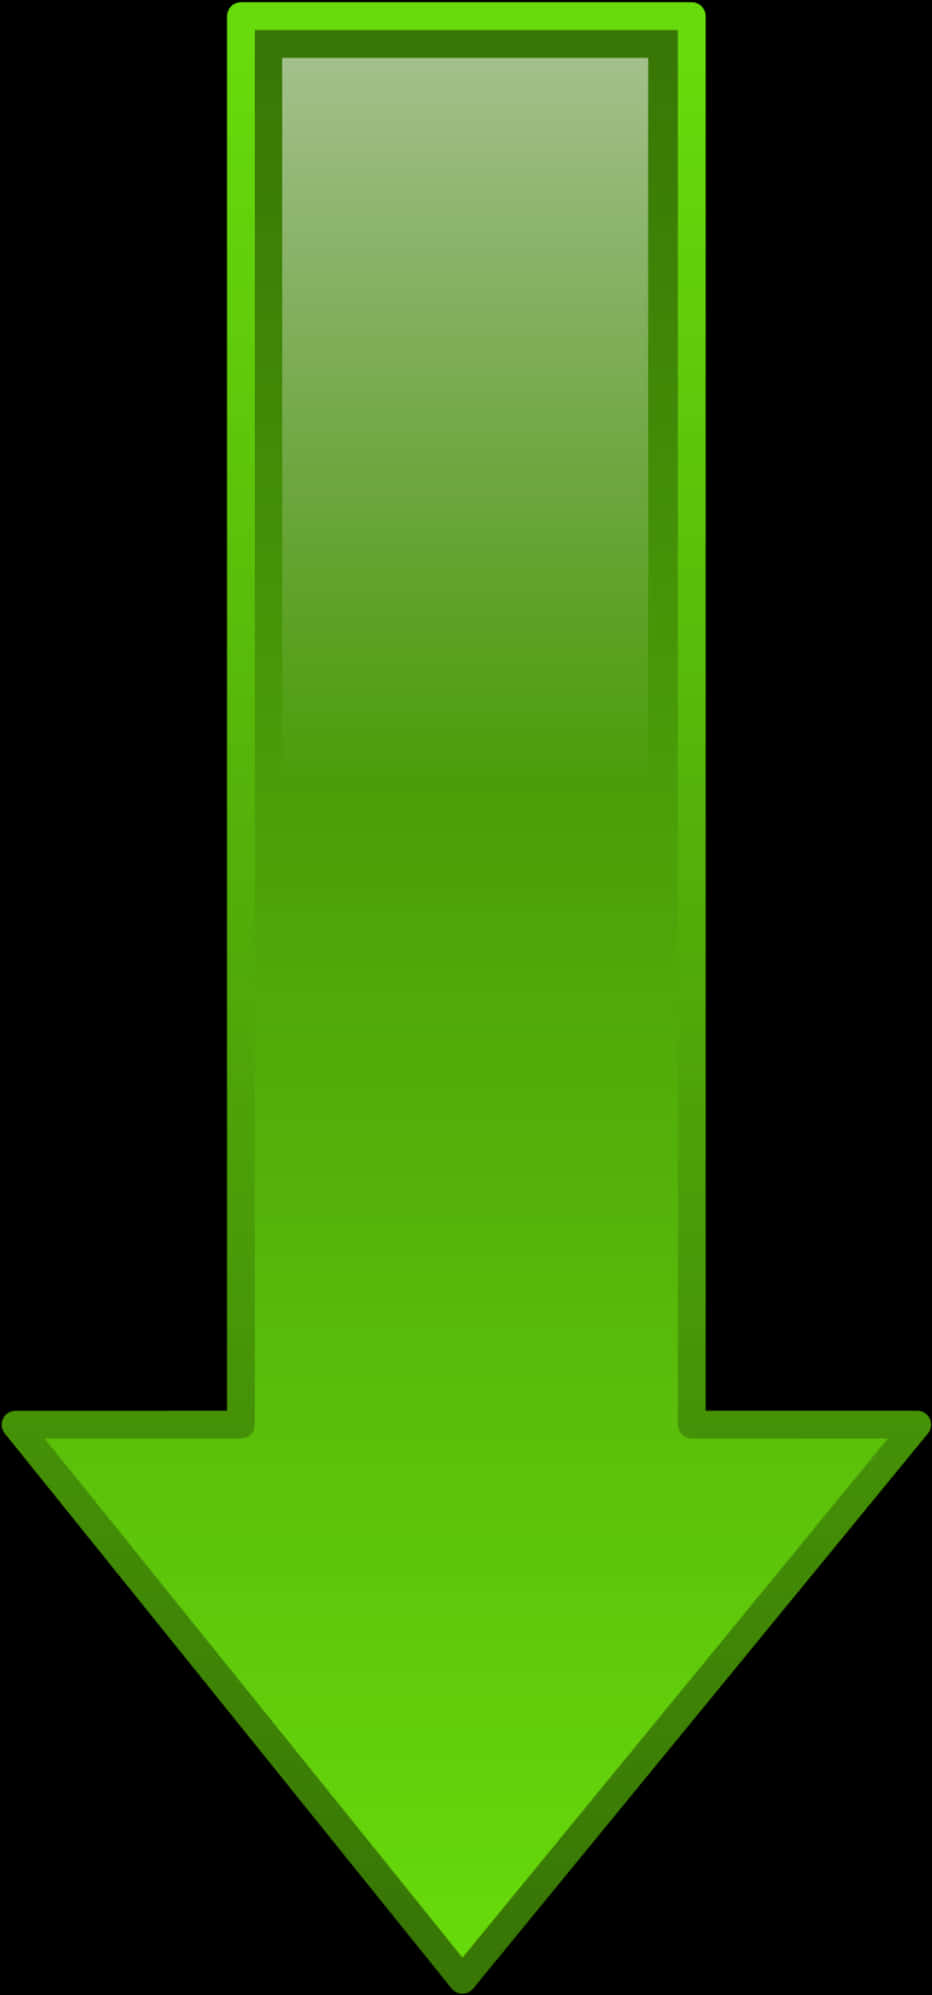 Green Downward Arrow Transparent Background PNG image